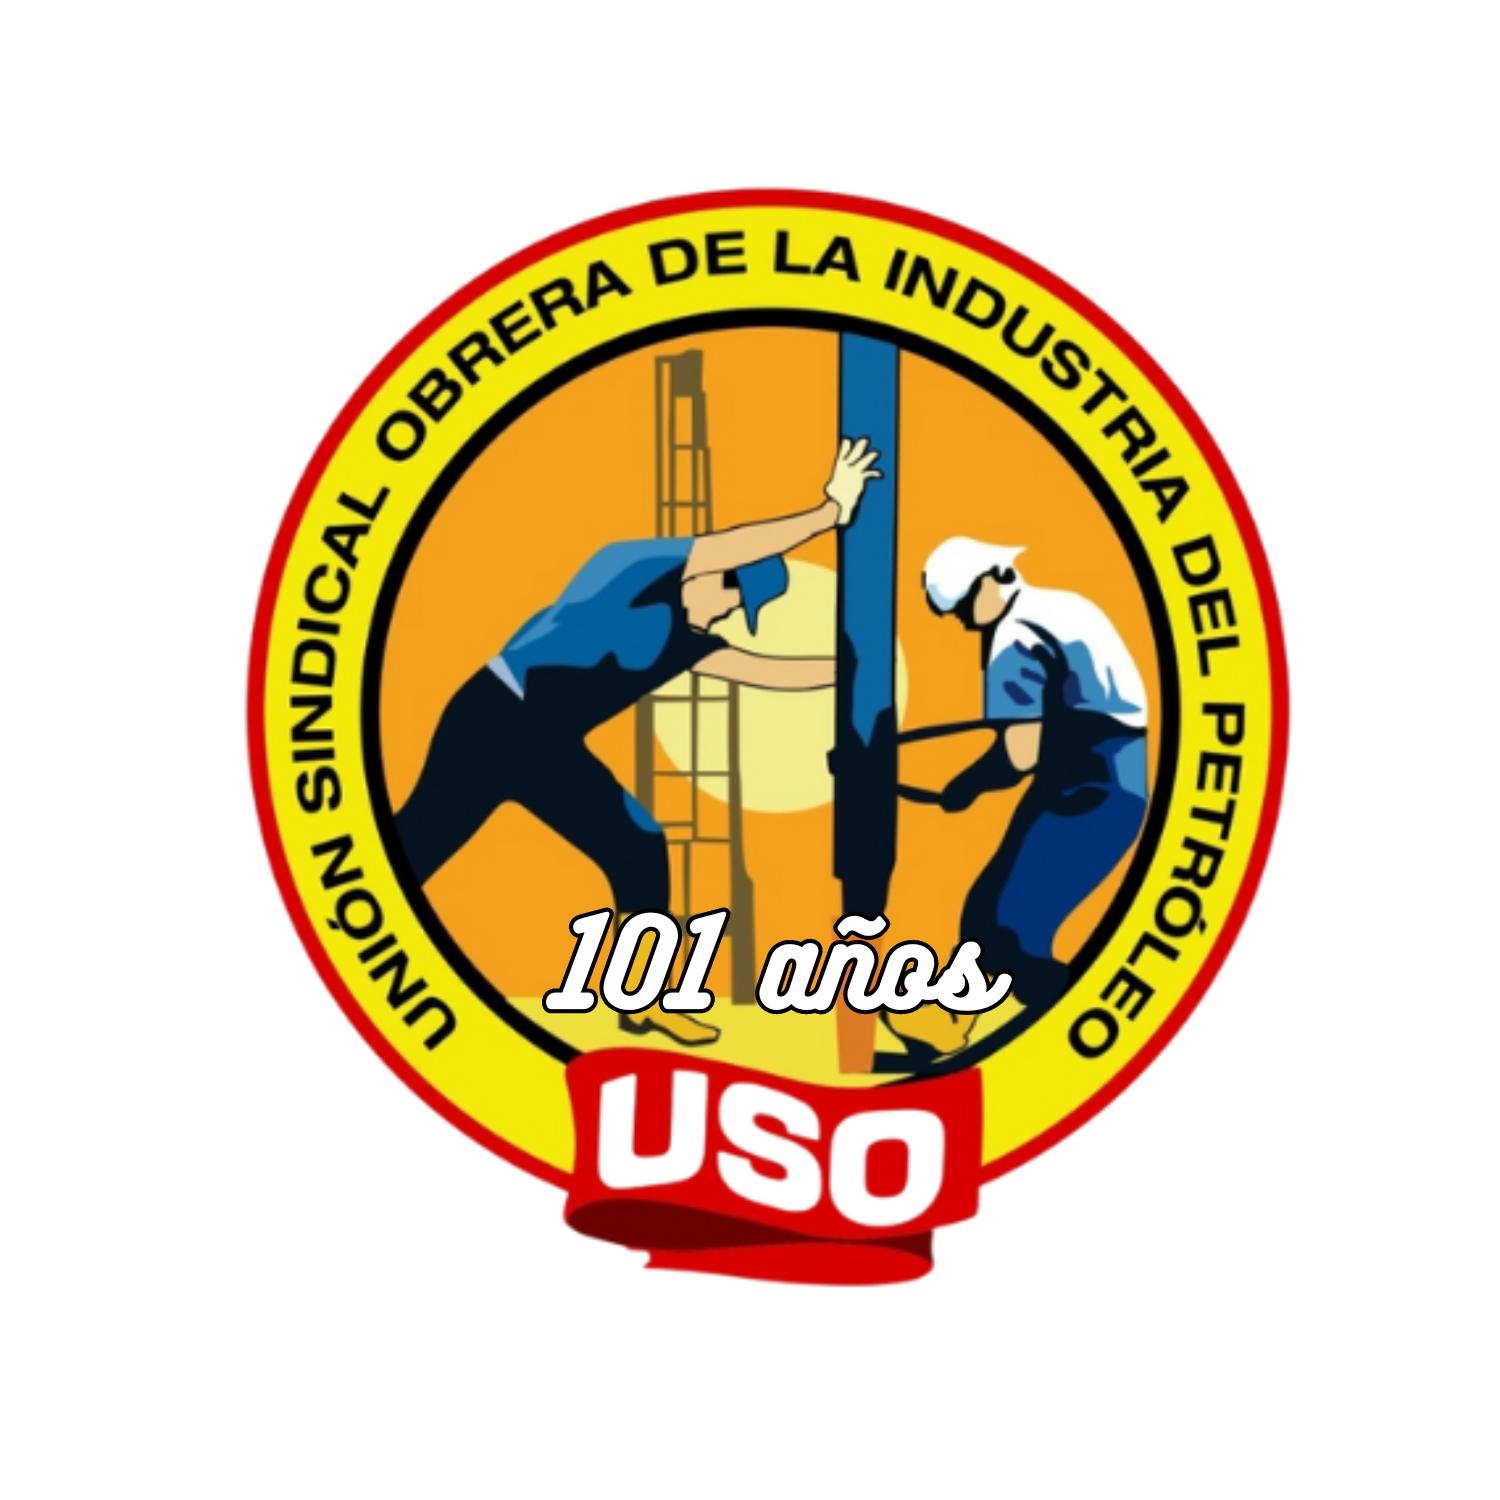 USO Colombia Unión Sindical Obrera